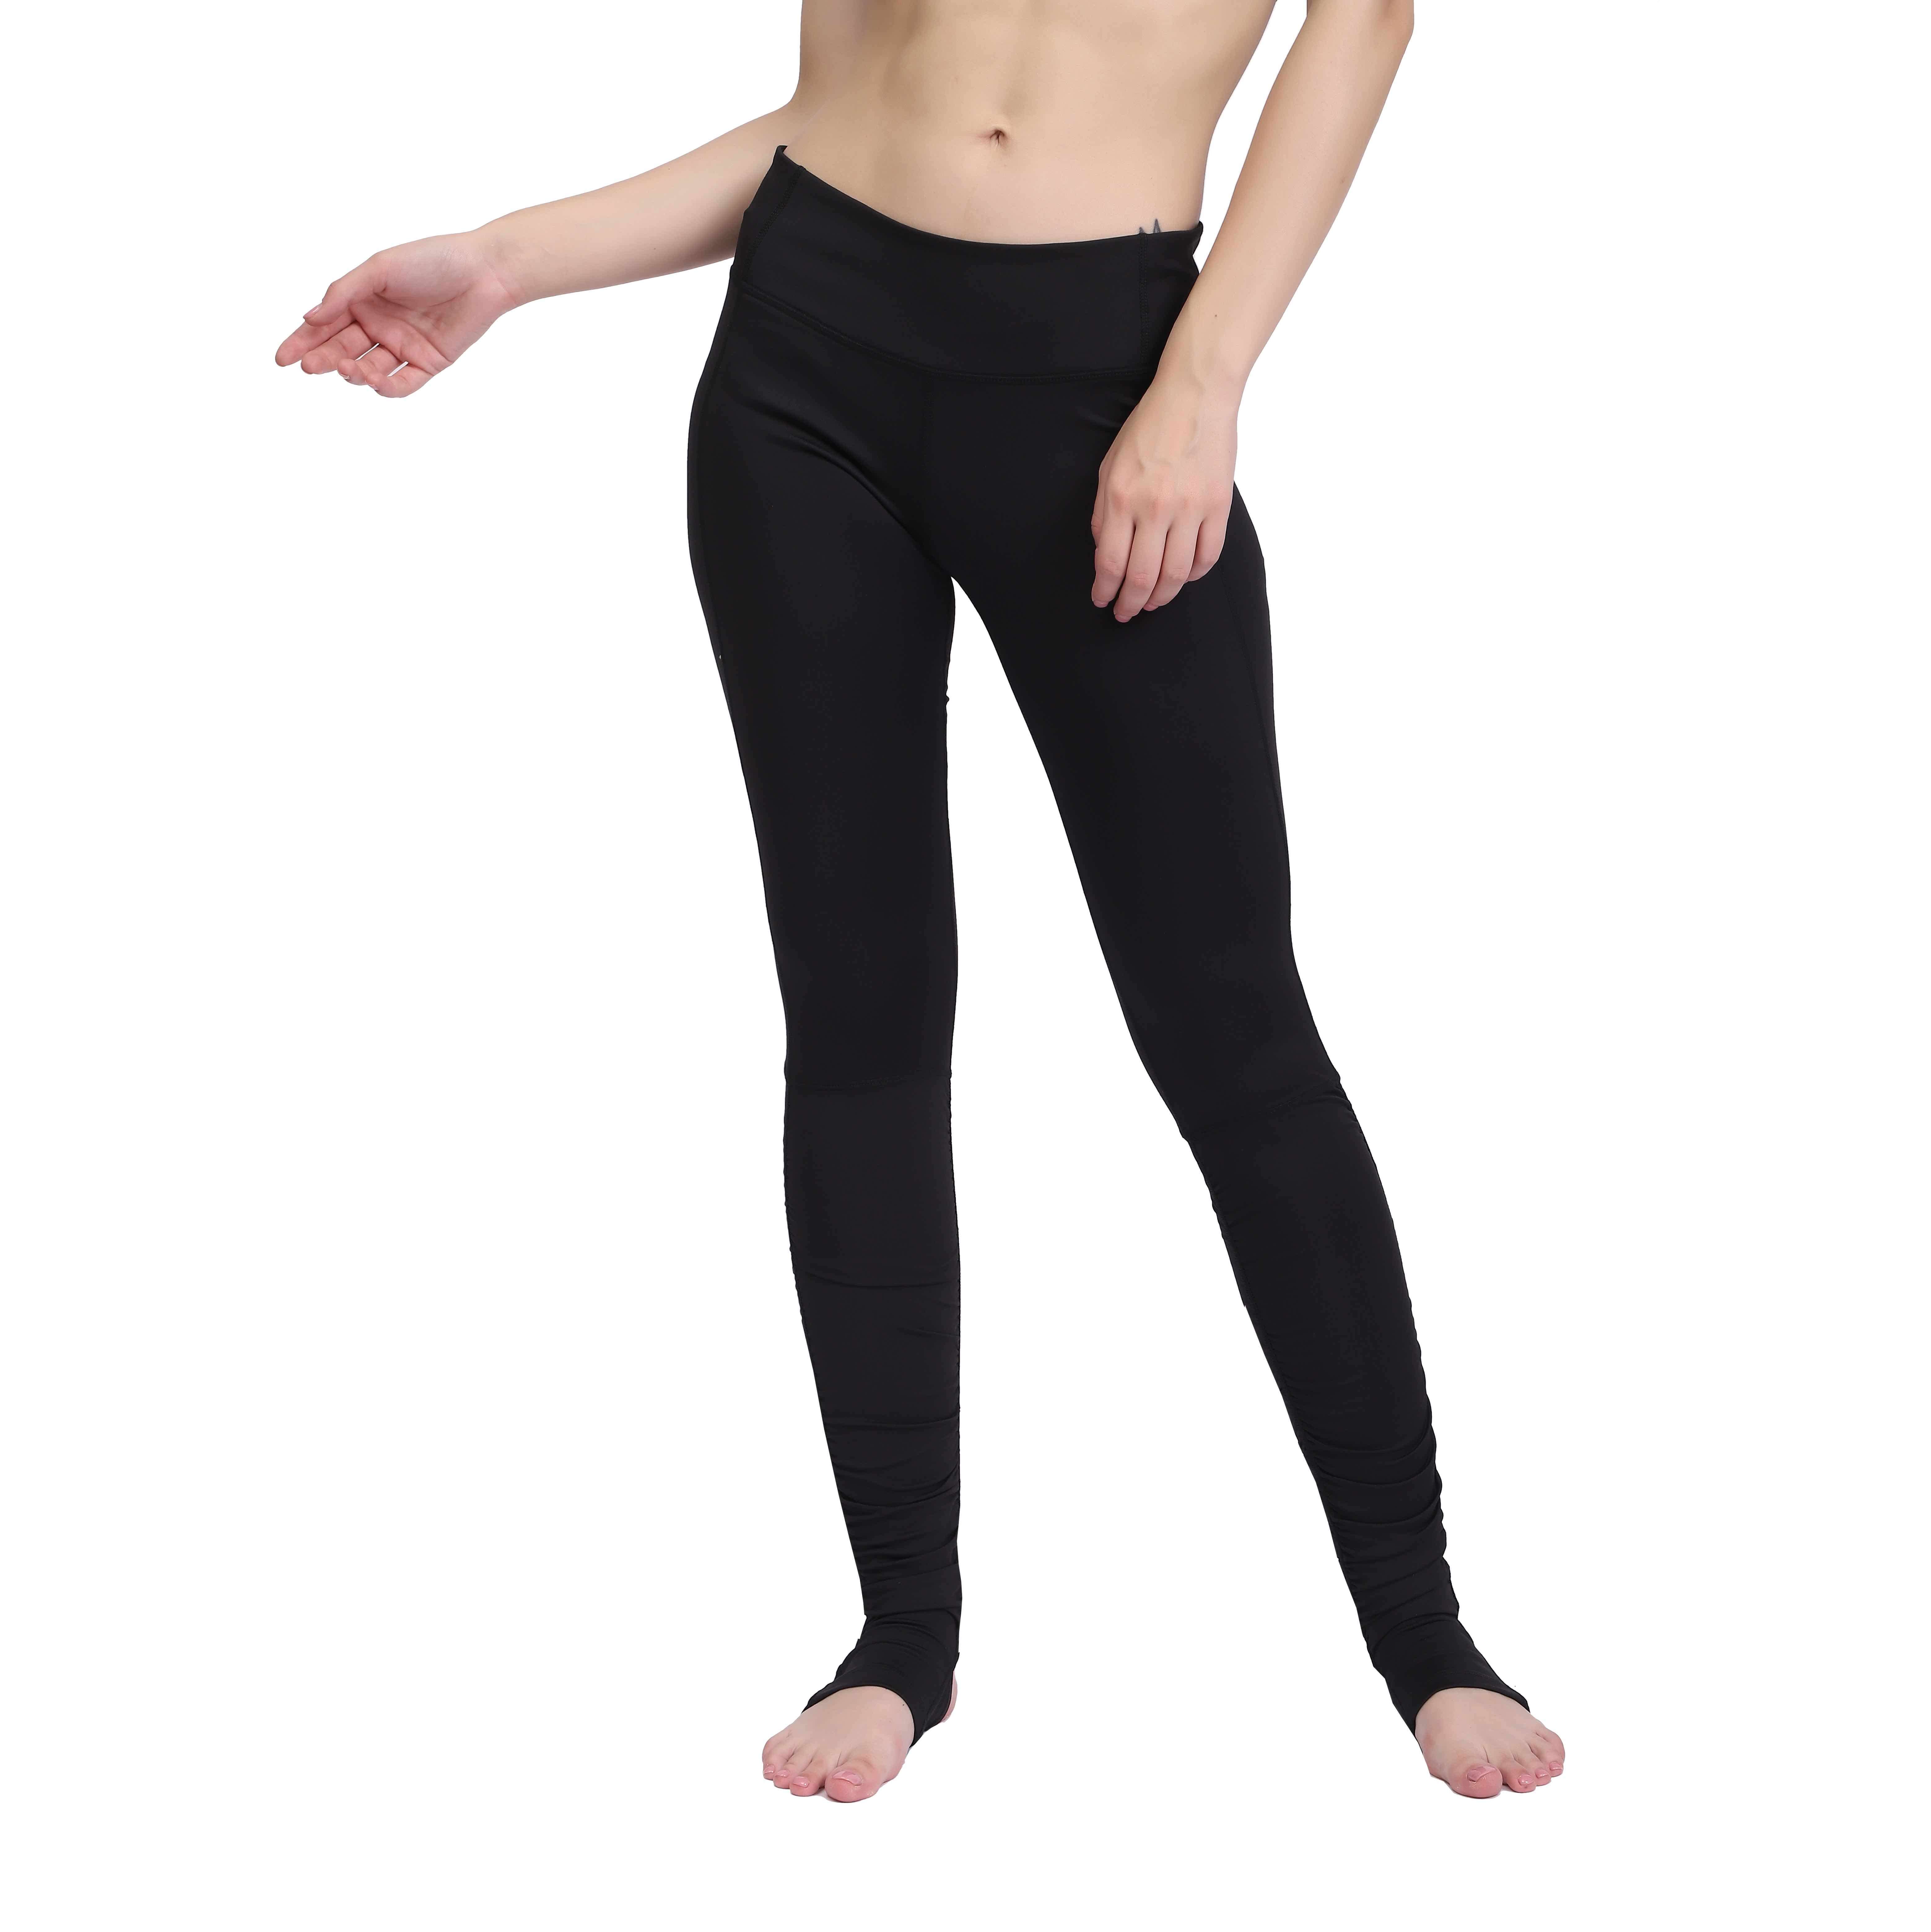 Pantalones largos de Yoga para mujer, mallas deportivas con refuerzo en la entrepierna, mallas para correr, pantalones elásticos de cintura alta para Fitness